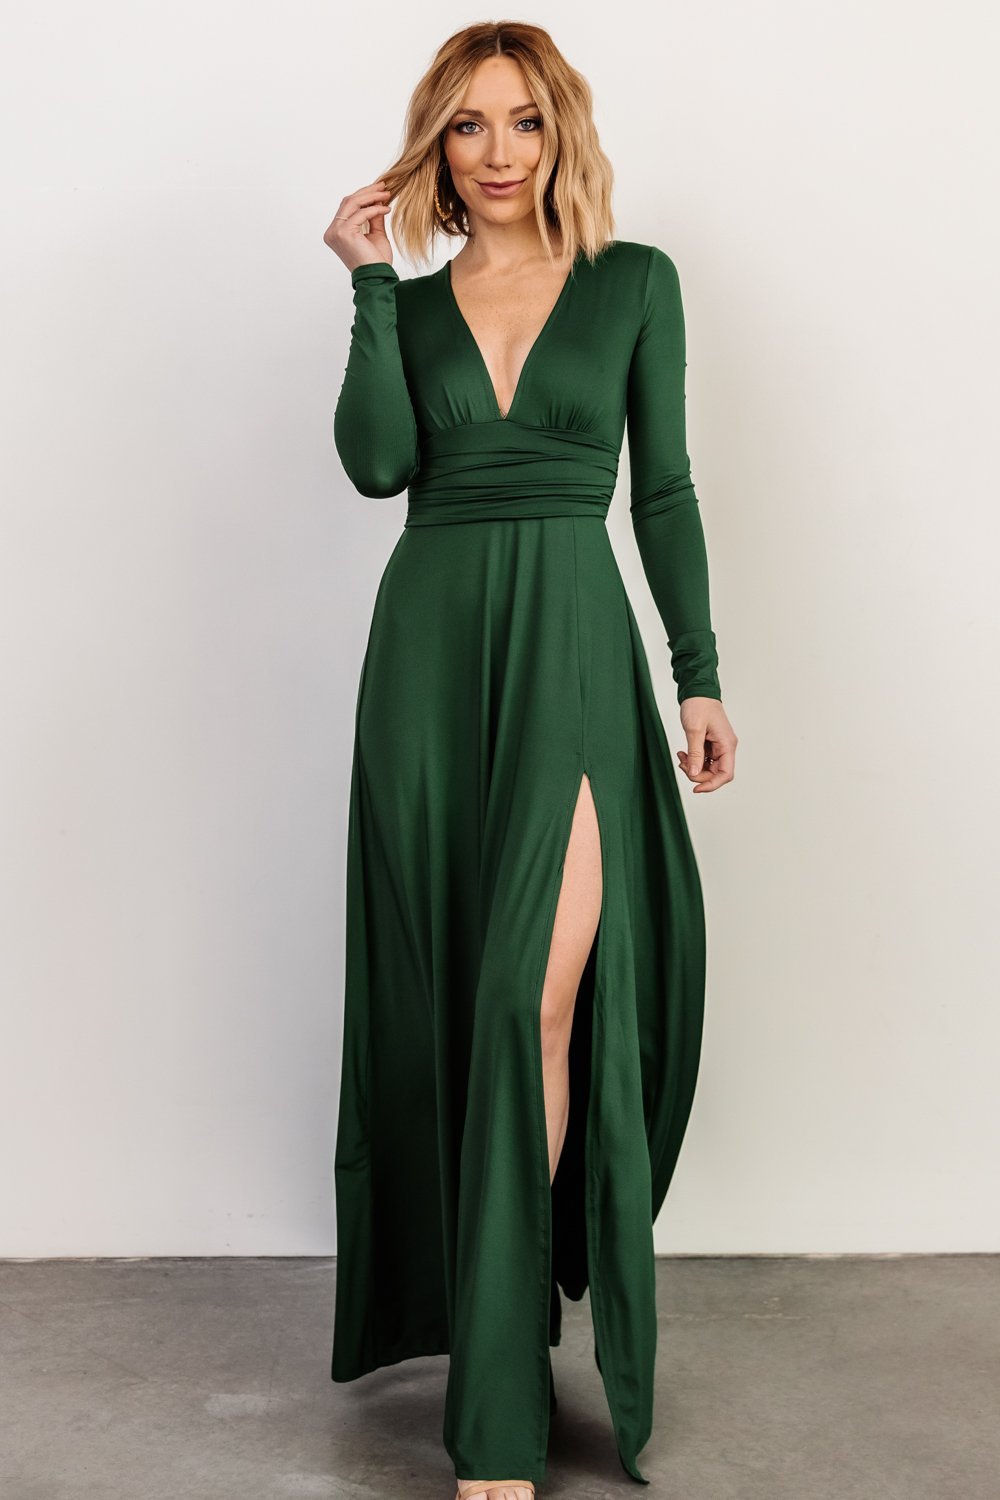 green dress dress